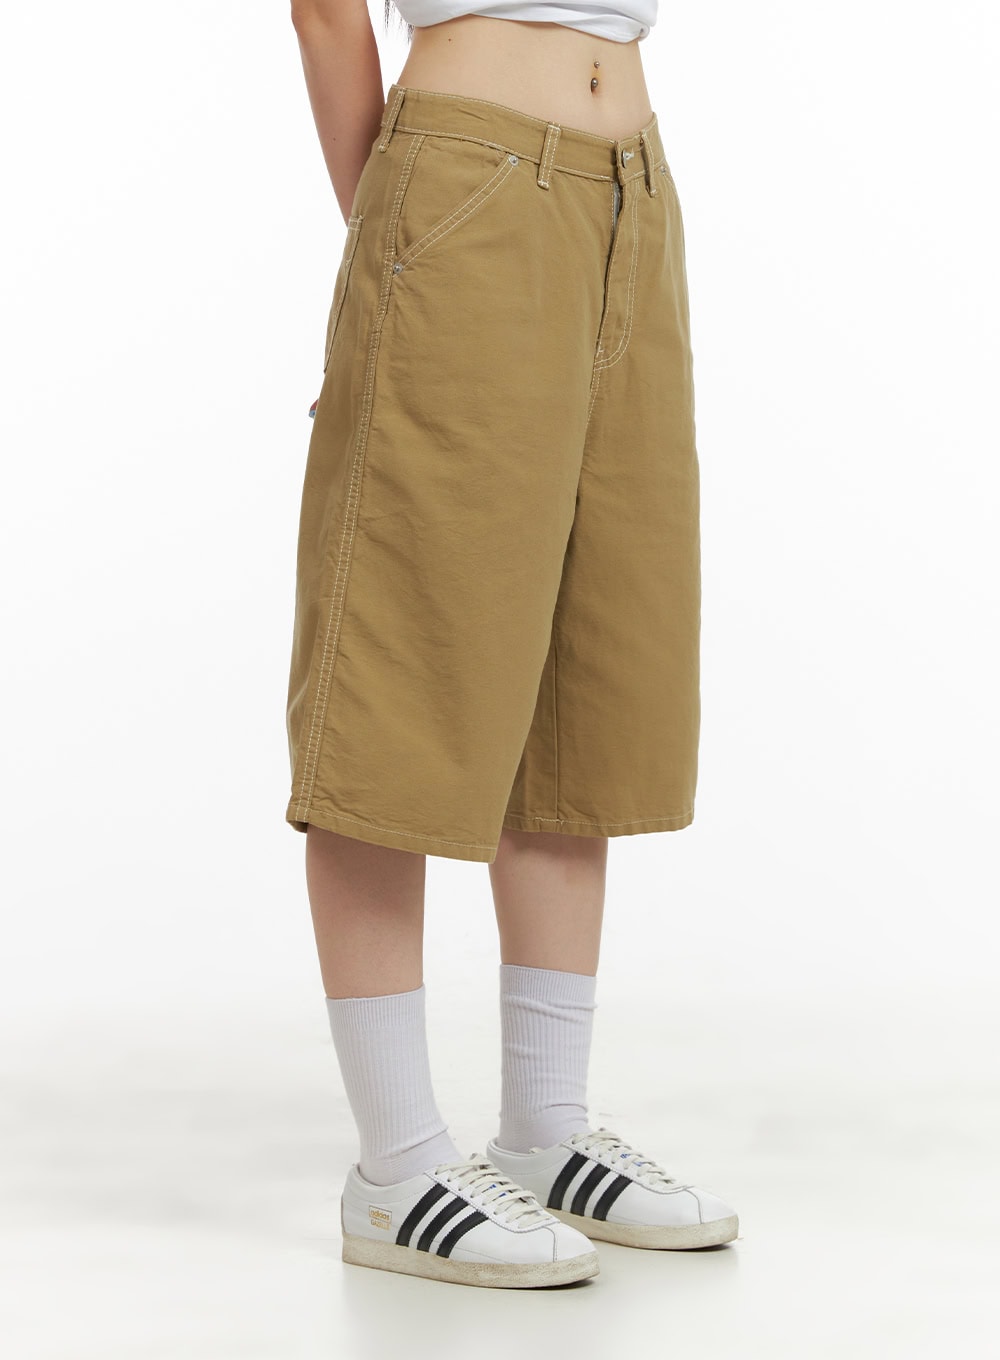 cotton-stitched-bermuda-shorts-cu425